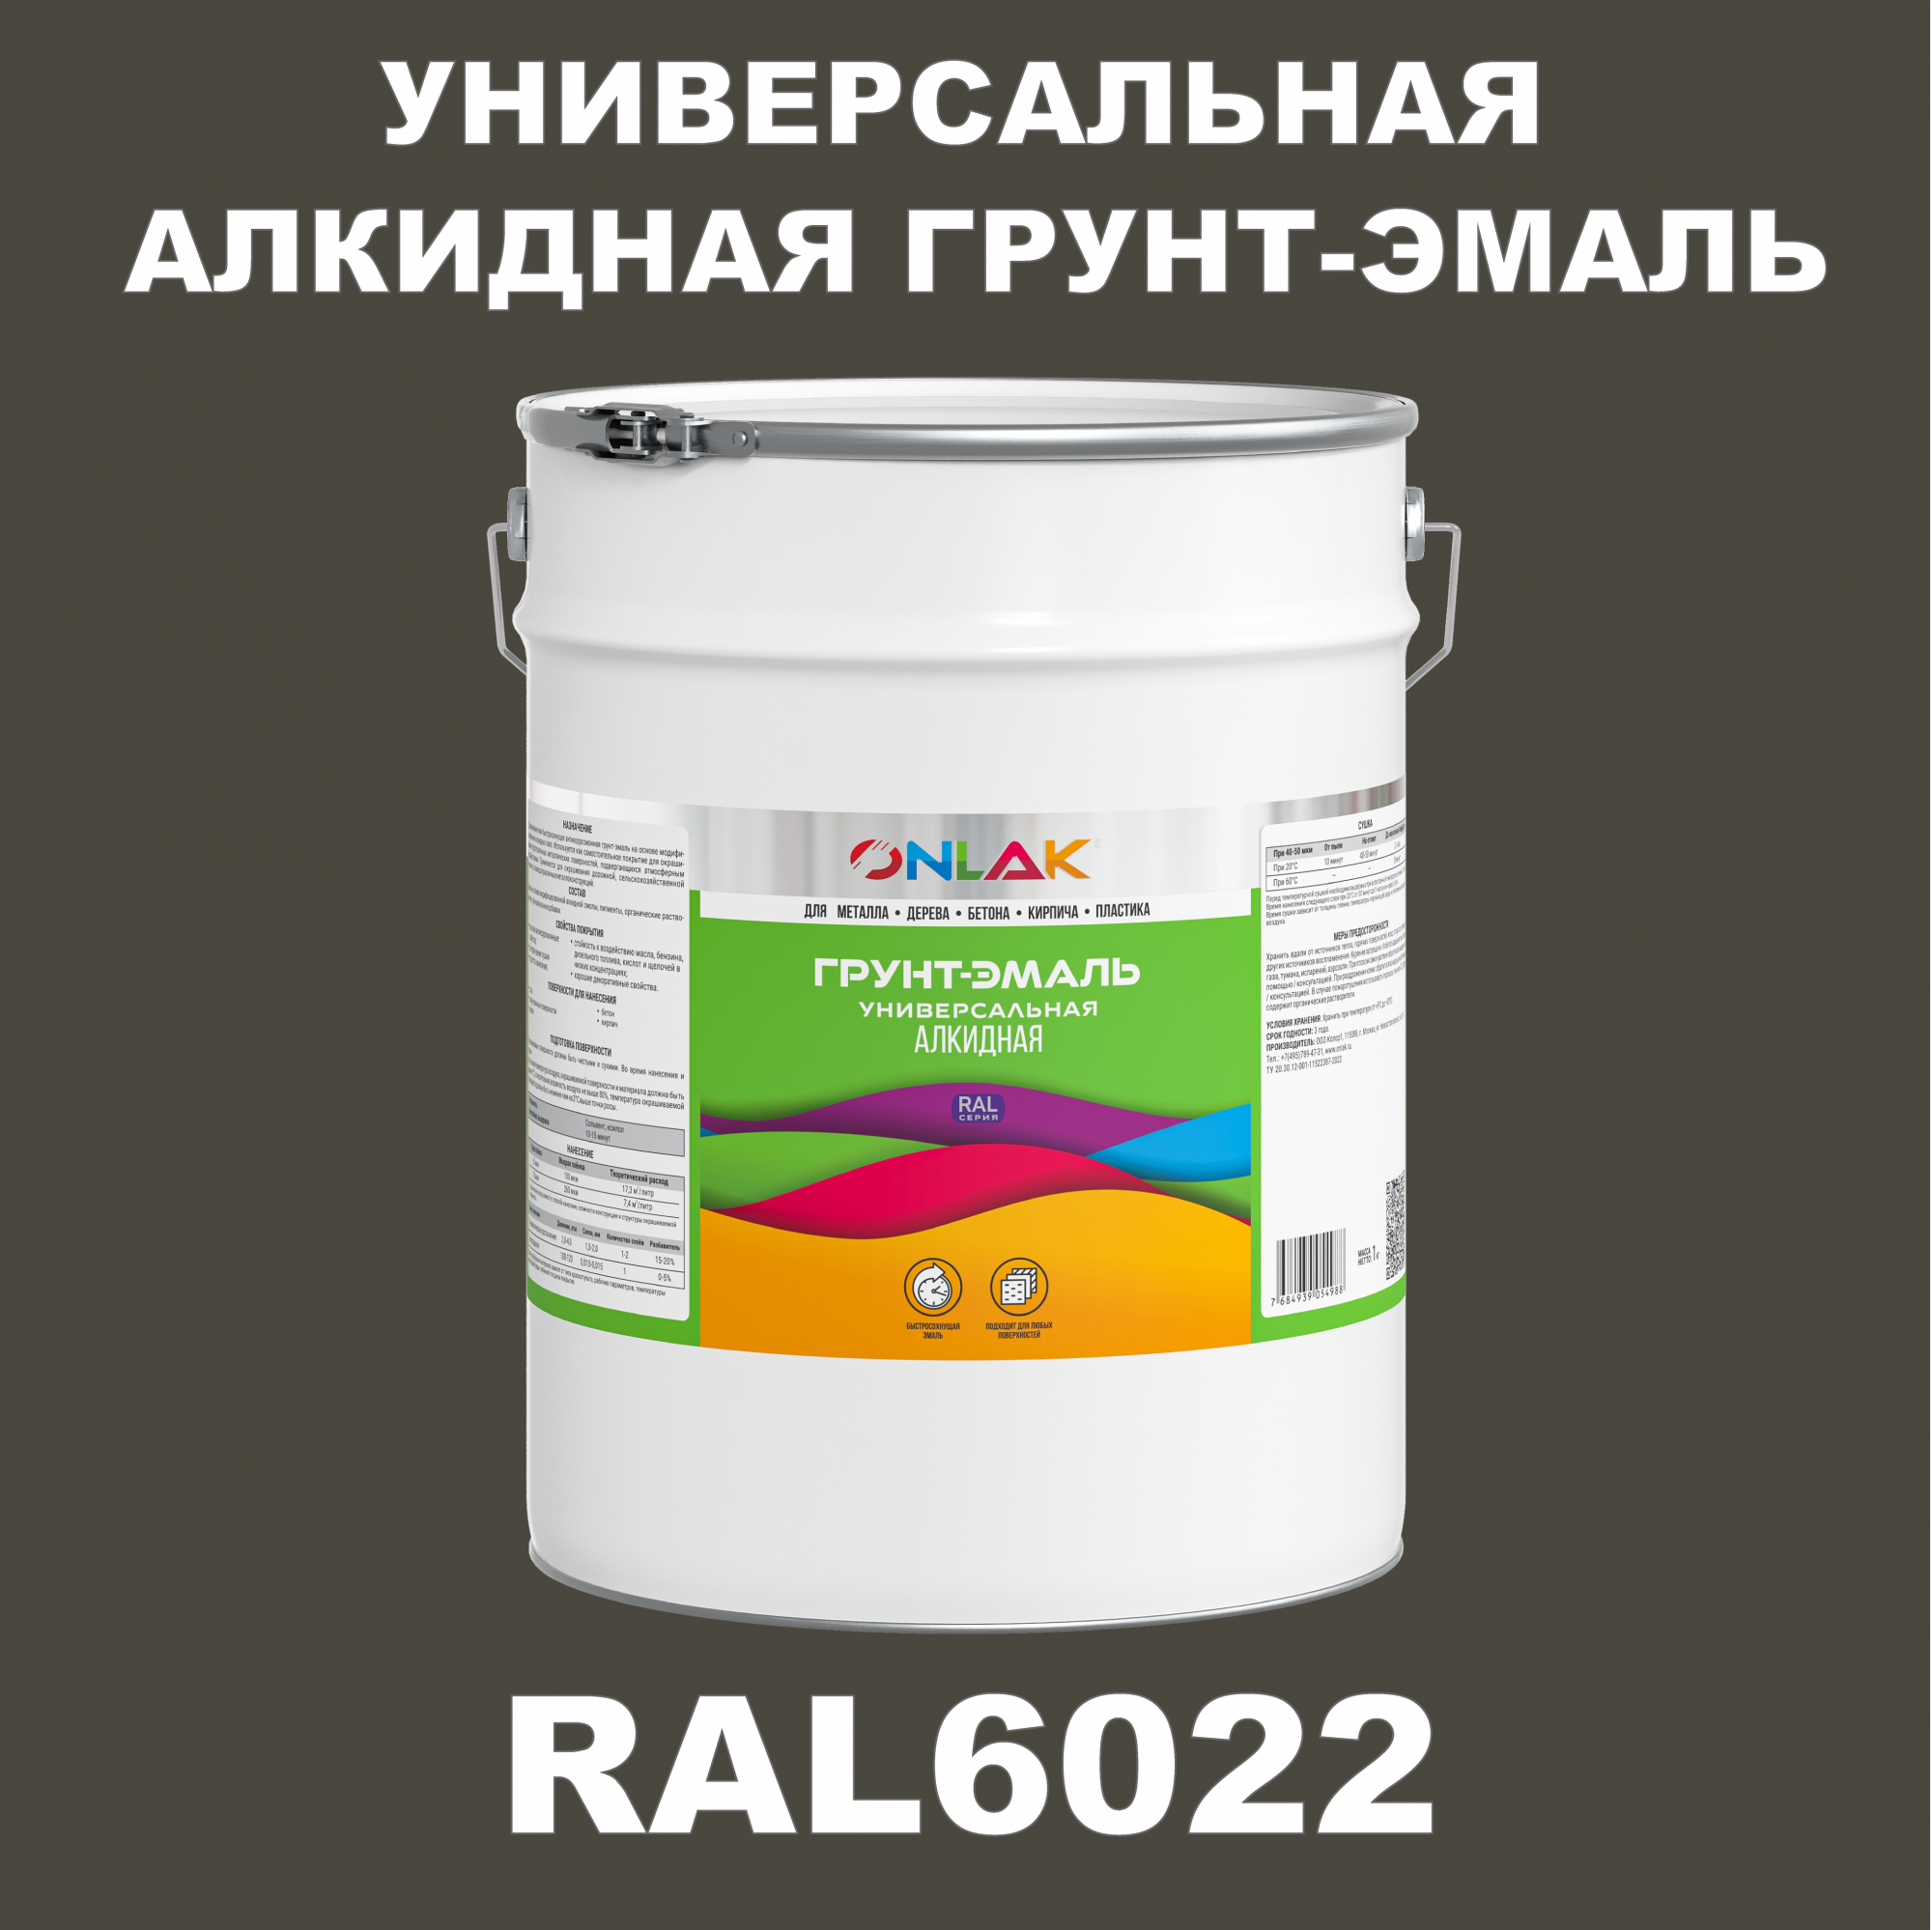 Грунт-эмаль ONLAK 1К RAL6022 антикоррозионная алкидная по металлу по ржавчине 20 кг грунт эмаль yollo по ржавчине алкидная белая 0 9 кг